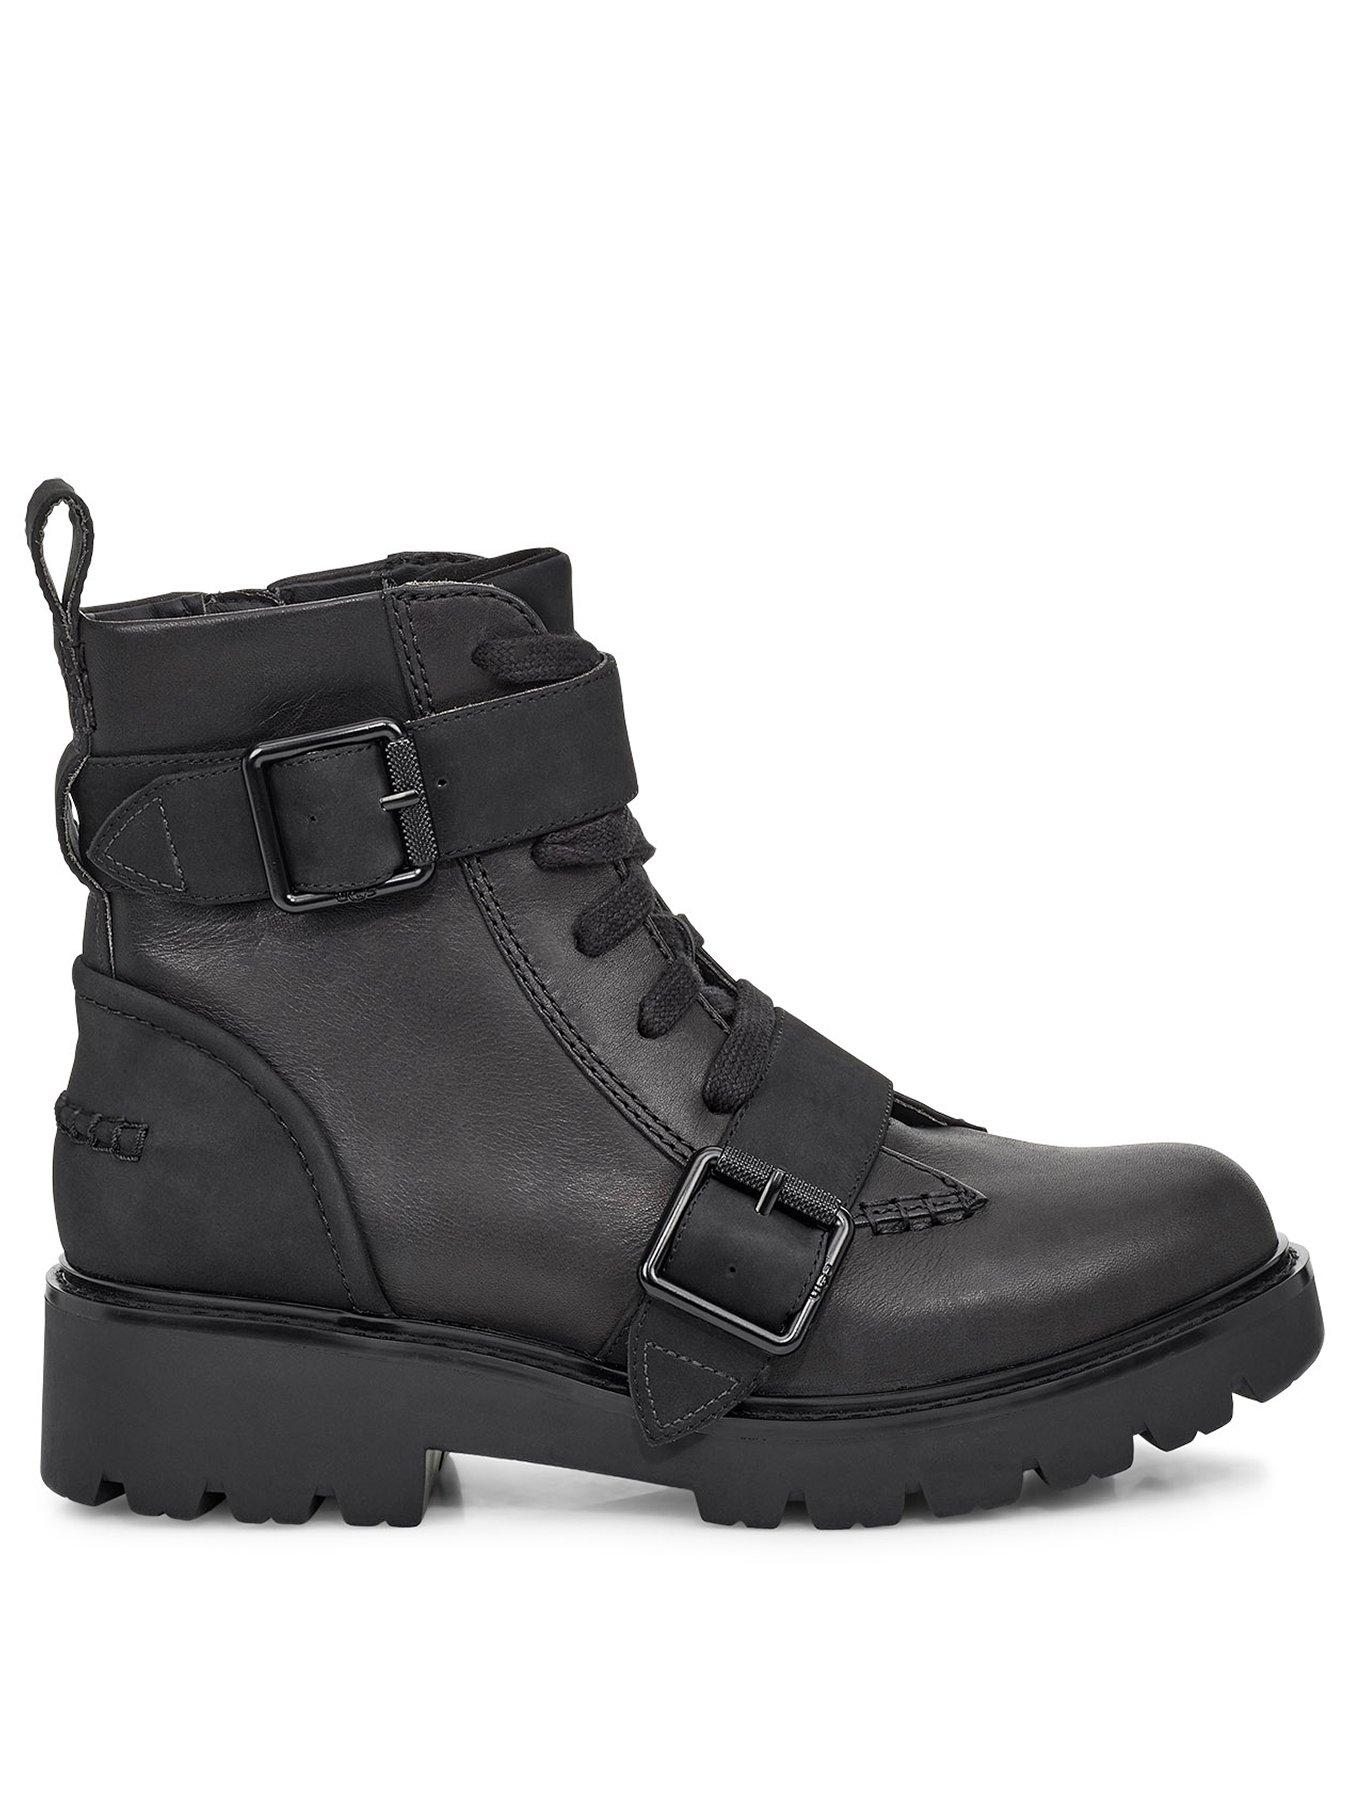 black ugg boots uk